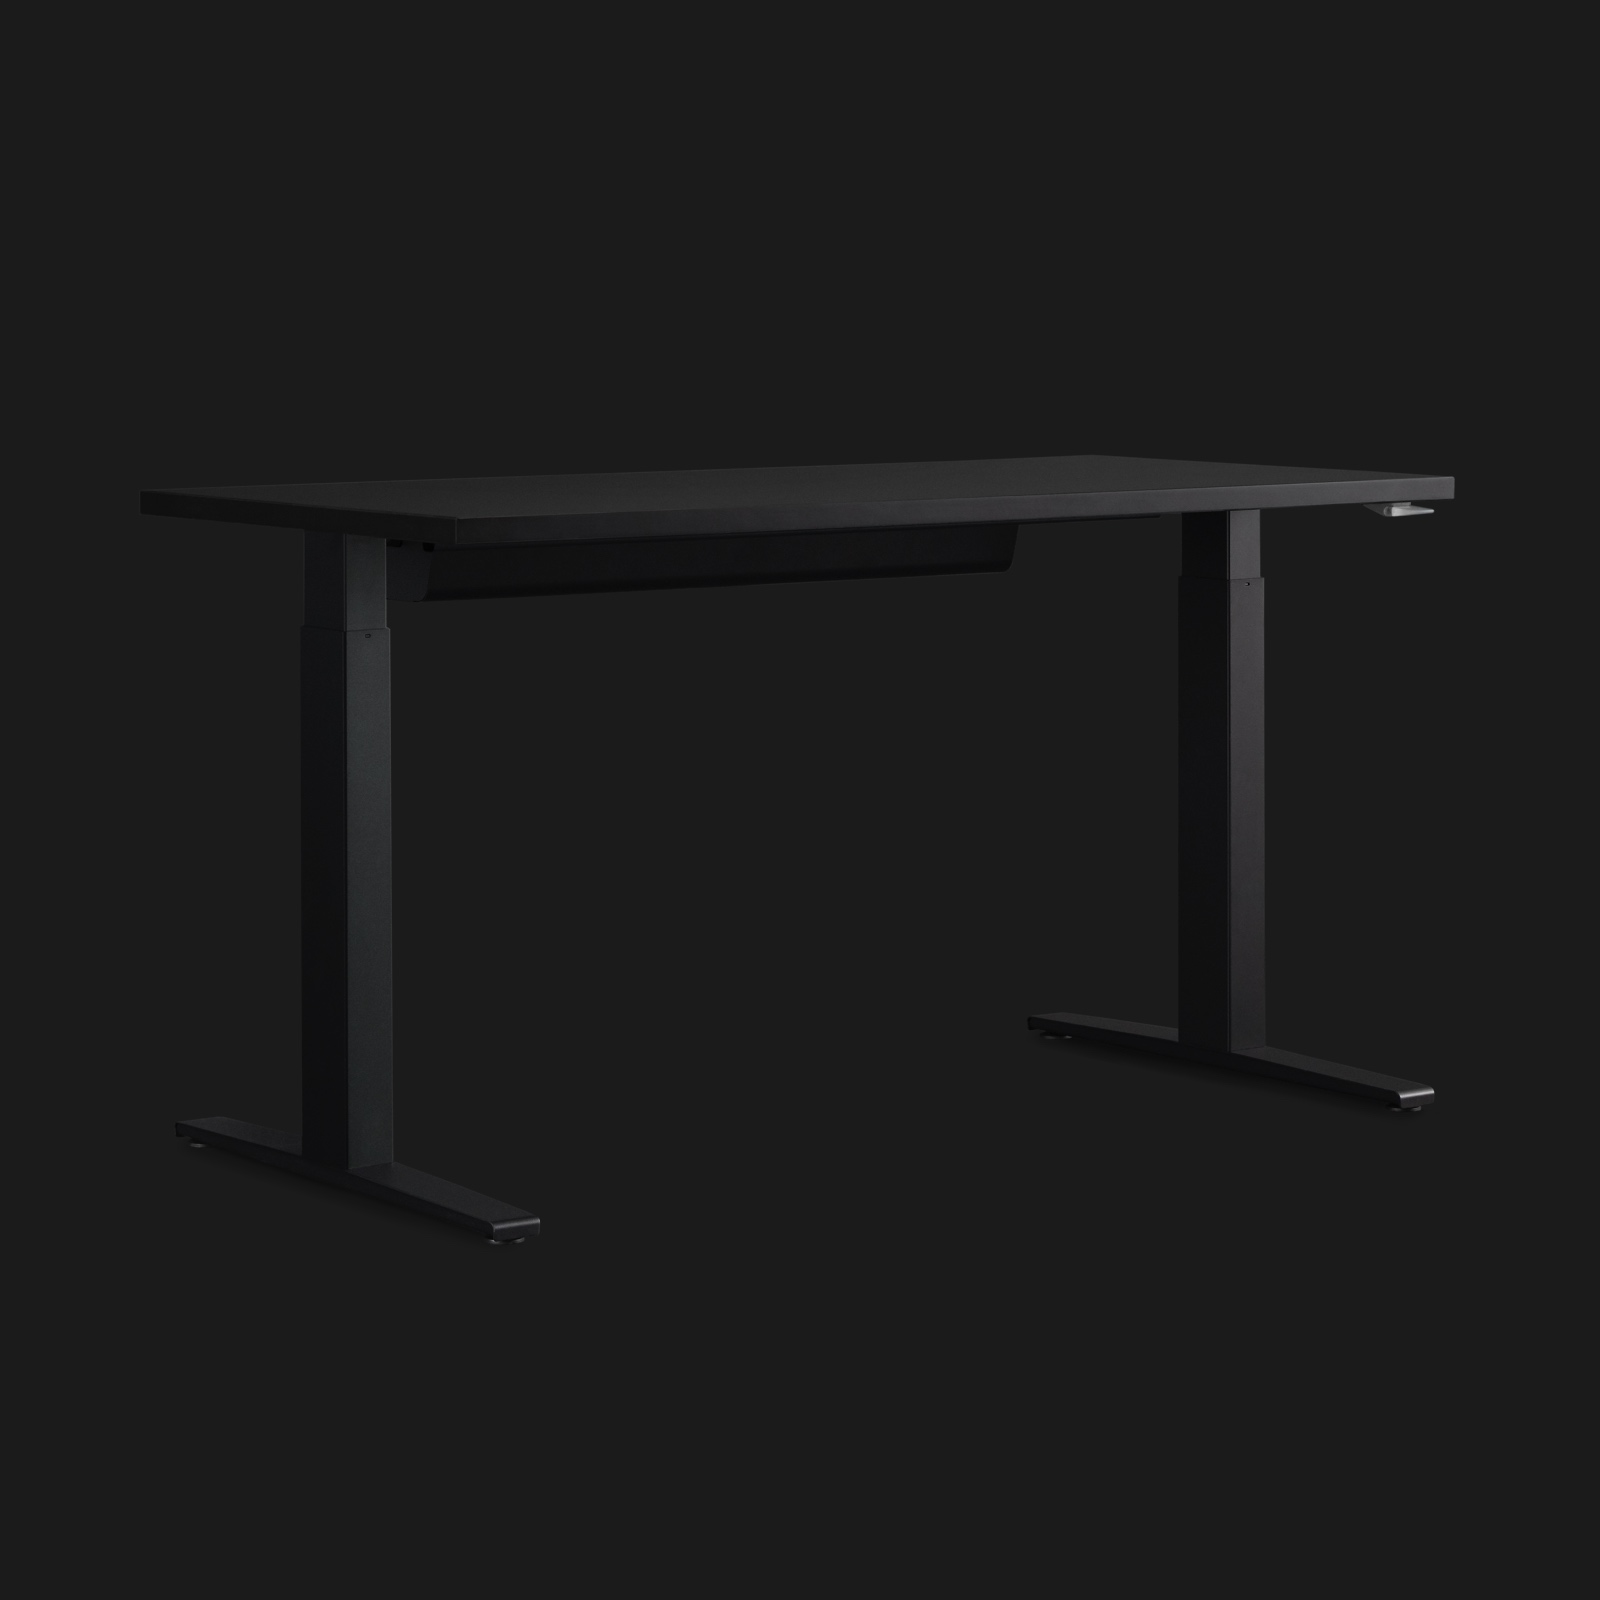 Mesa para games Motia com ajuste de altura em cinza escuro, mostrada em ângulo em um fundo preto um fundo nitidamente iluminado.